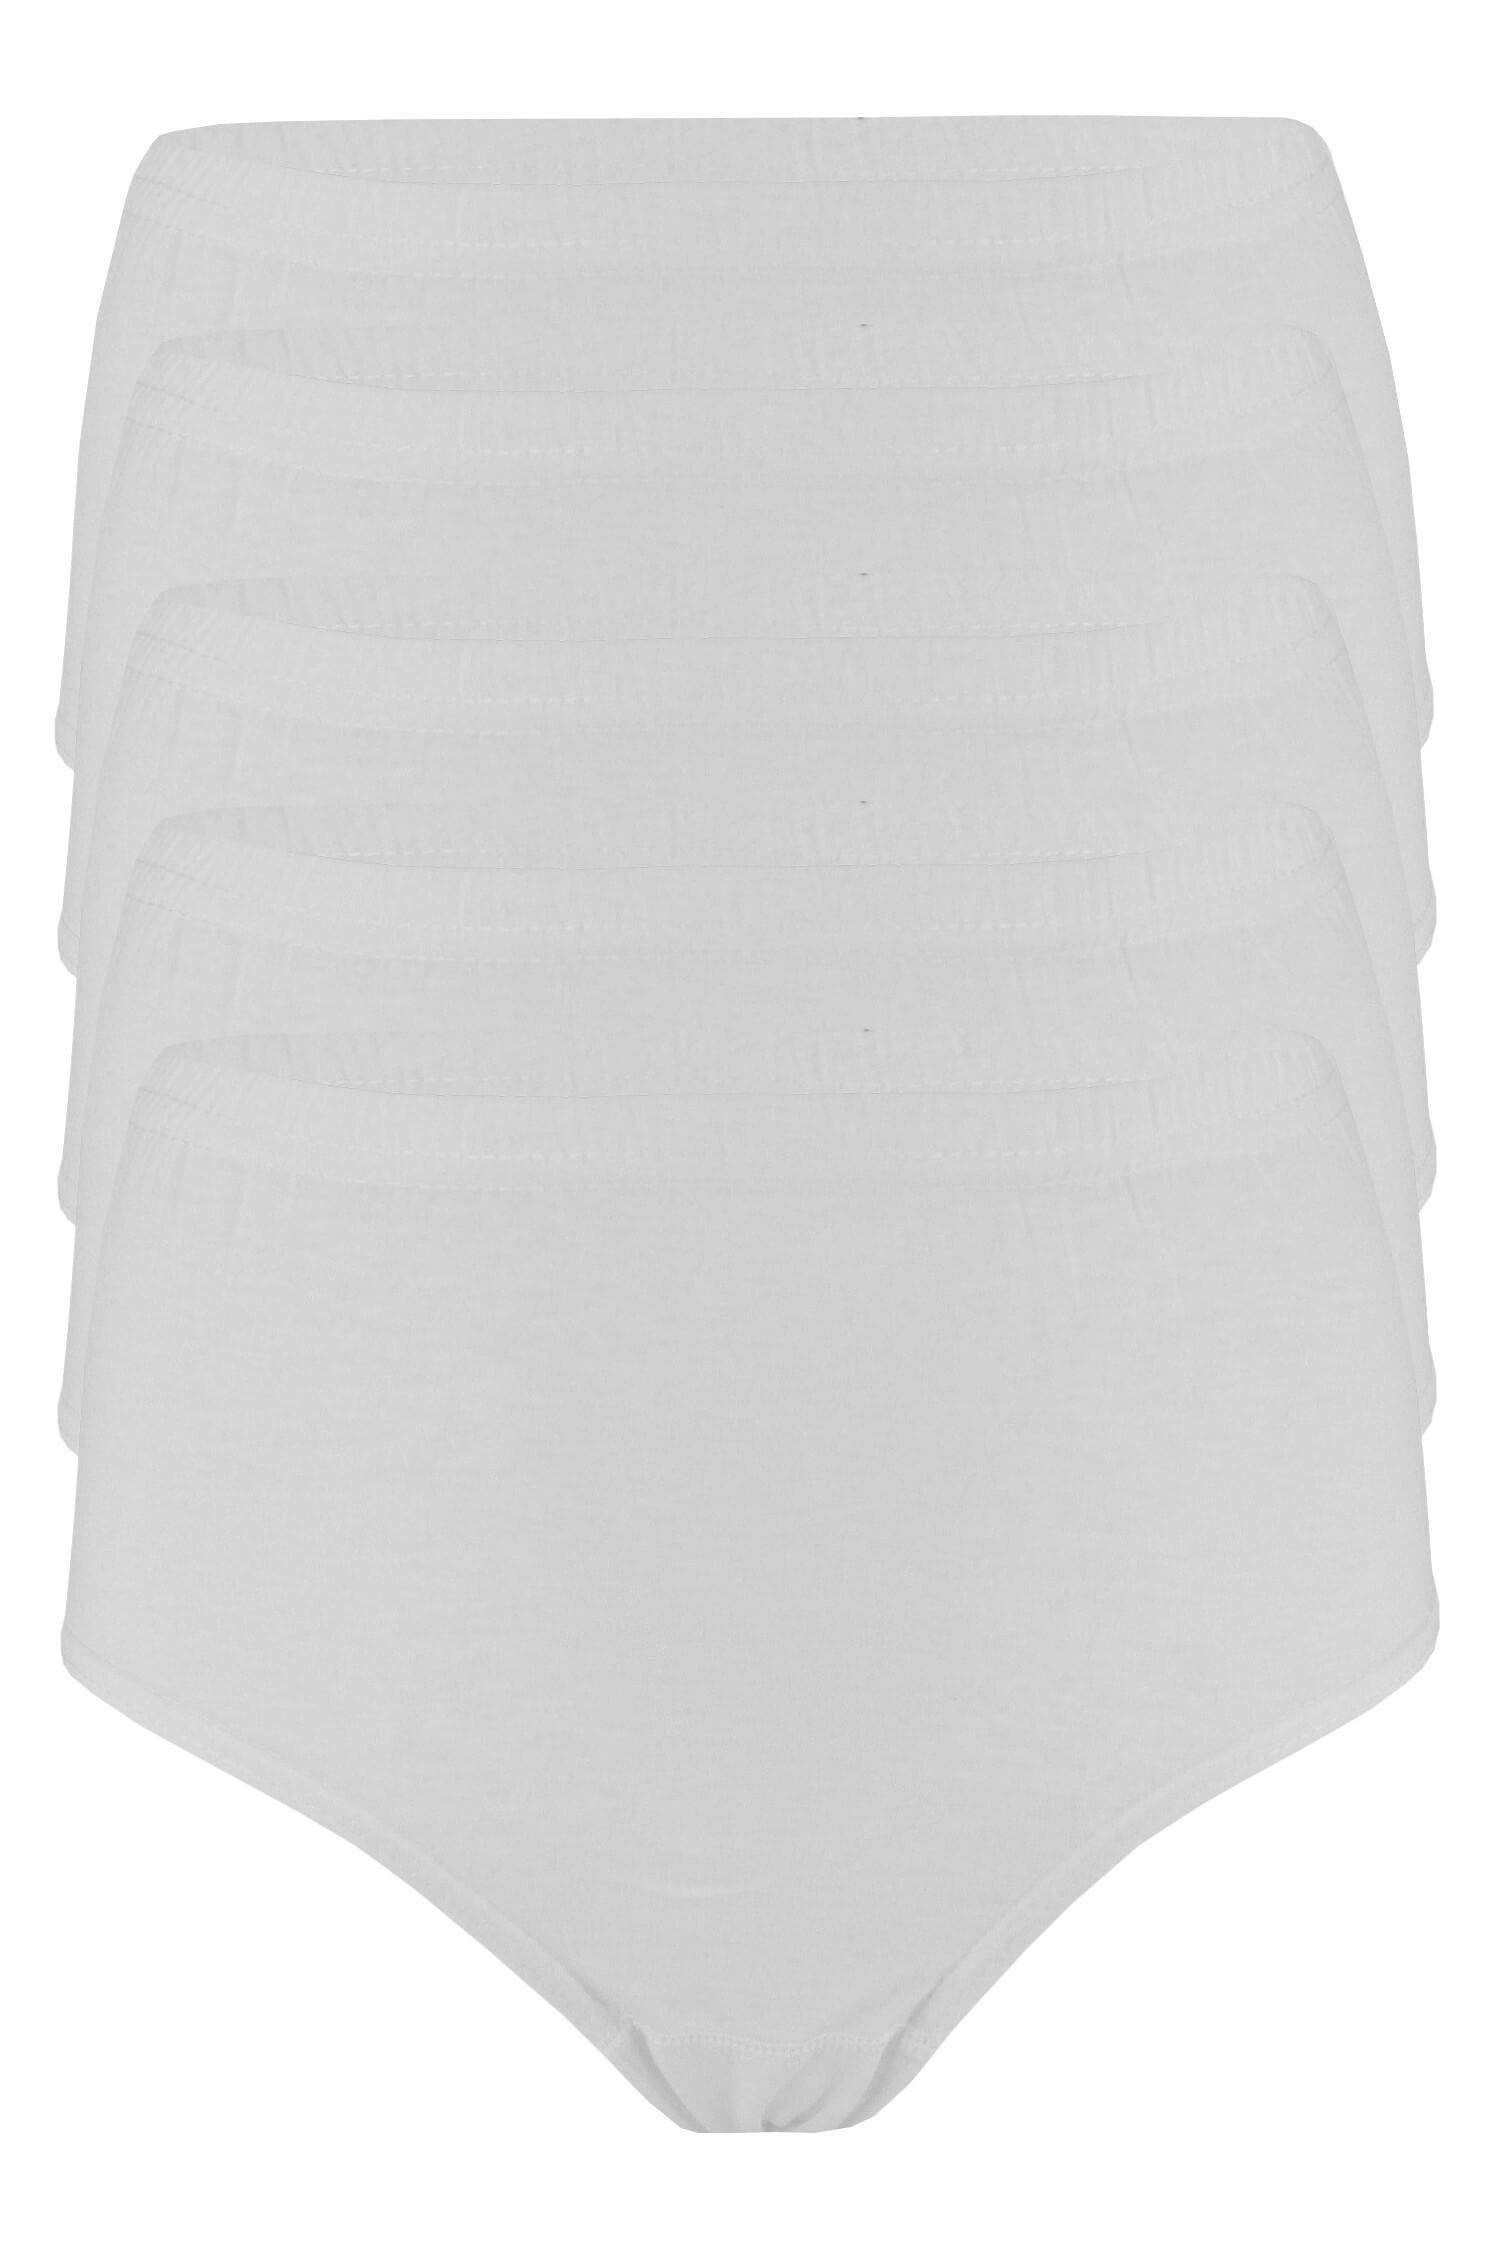 Daneta vyšší bavlněné kalhotky B5-5bal XXL bílá